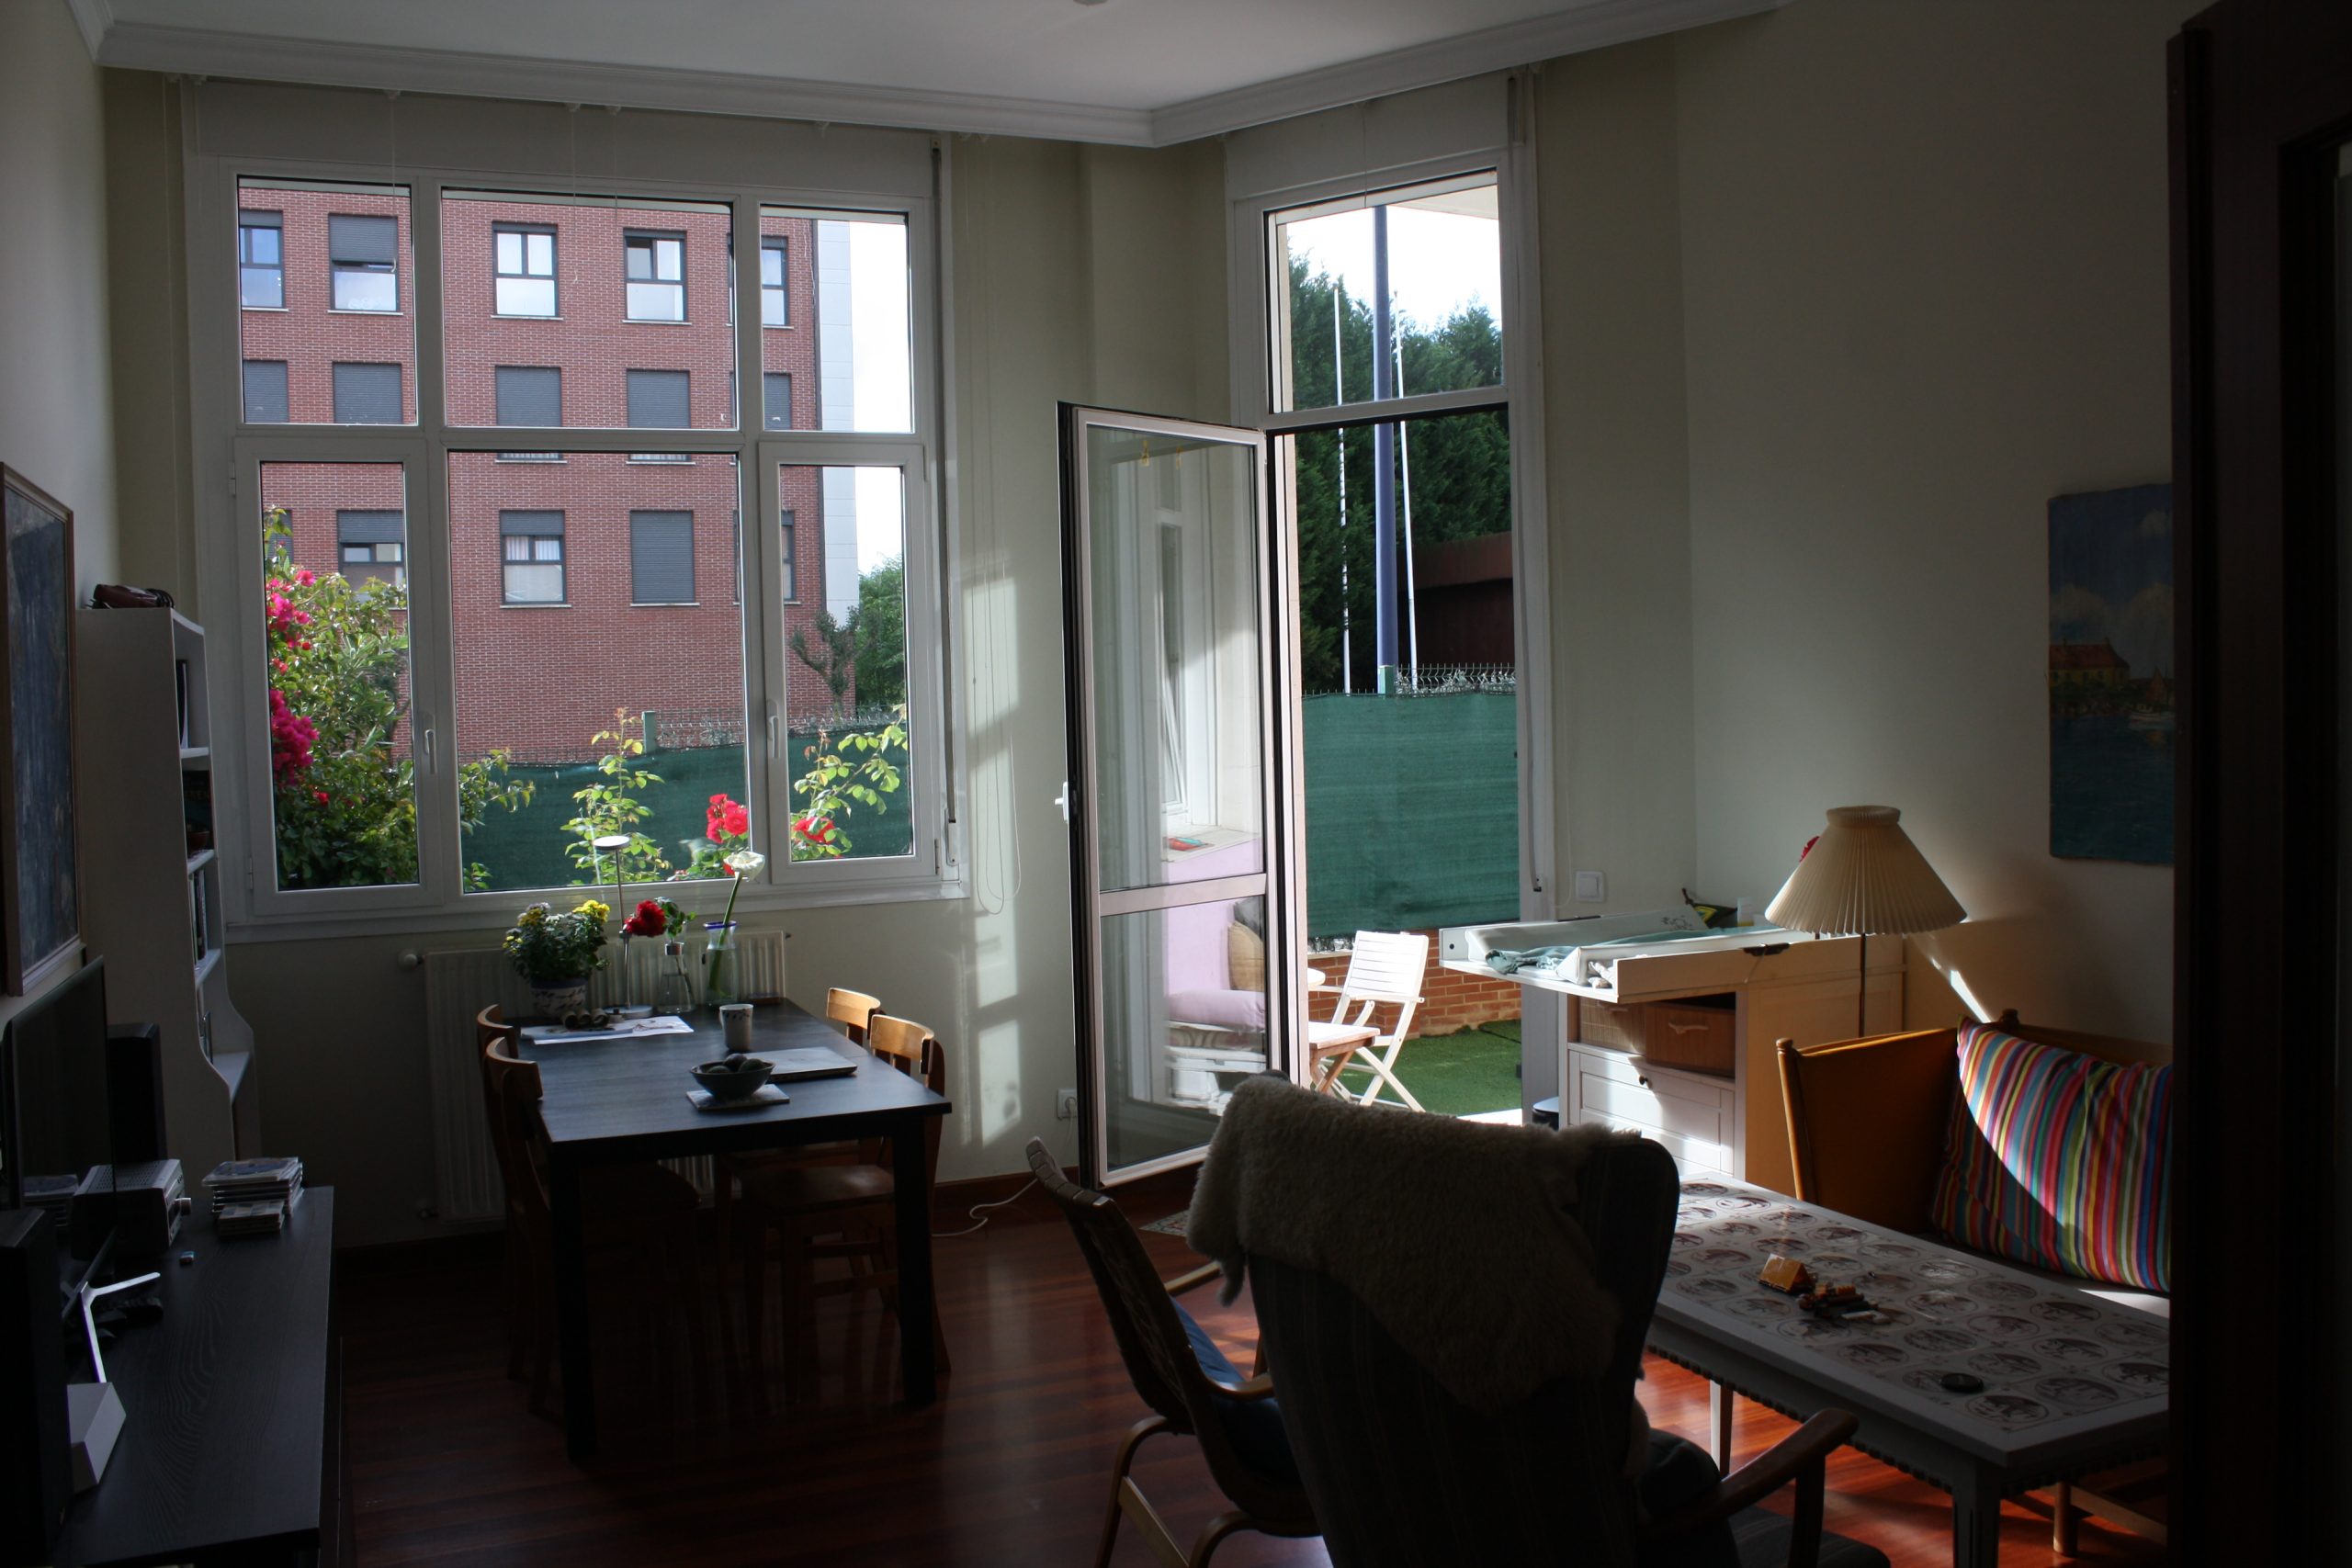 apartmen tfor rent in bilbao - livingroom